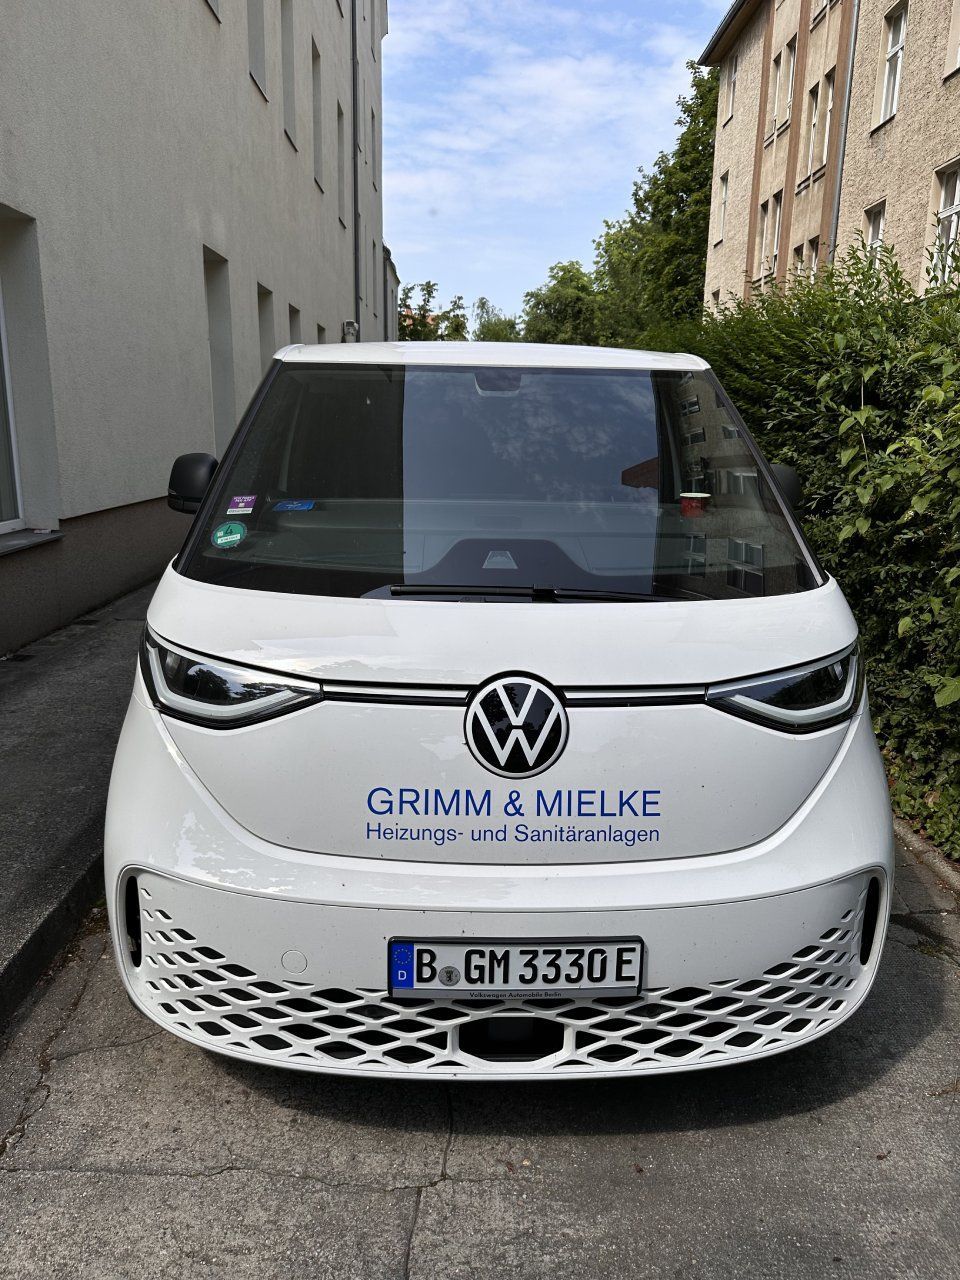 Auto der Grimm & Mielke Ingenieurgesellschaft für Heizungs- u. Sanitäranlagen GmbH